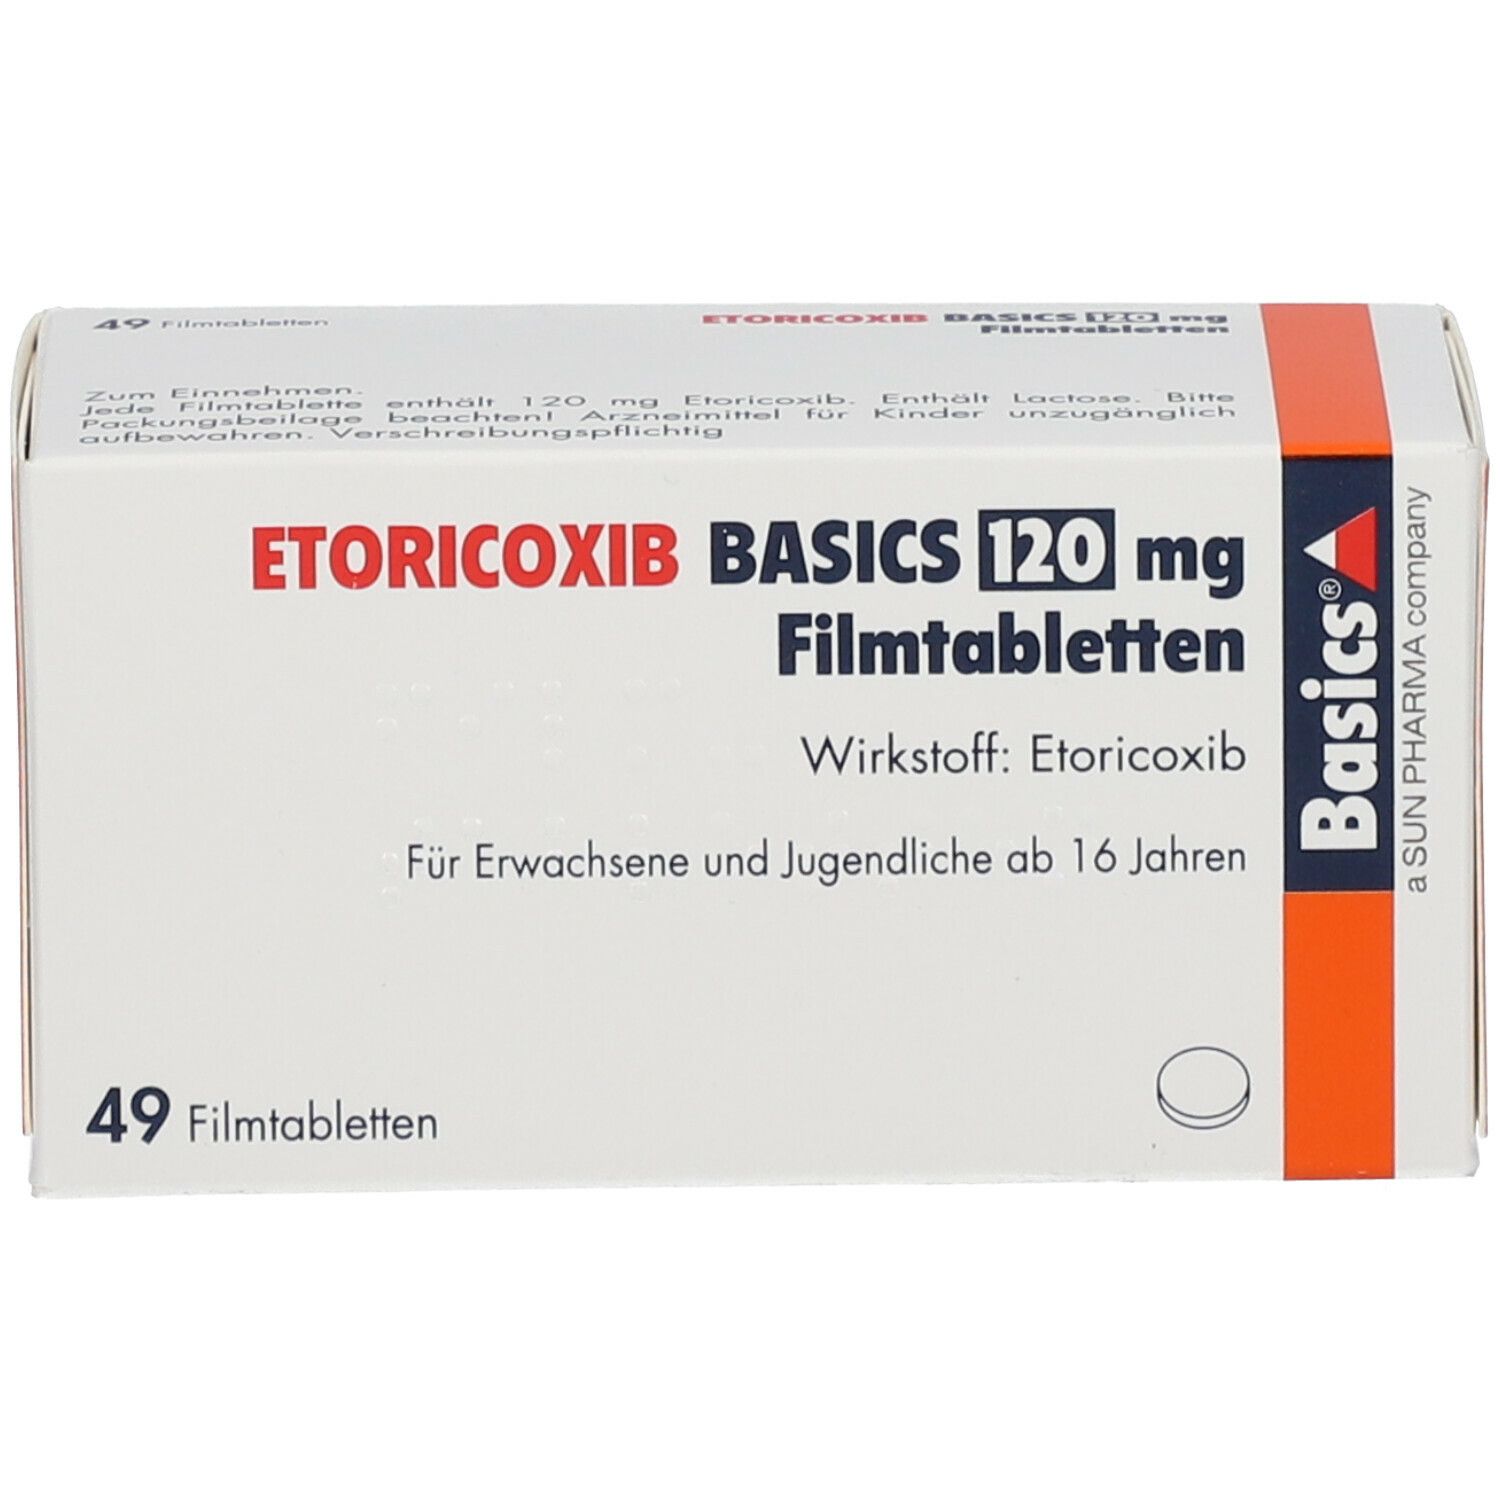 ETORICOXIB BASICS 120 mg Filmtabletten